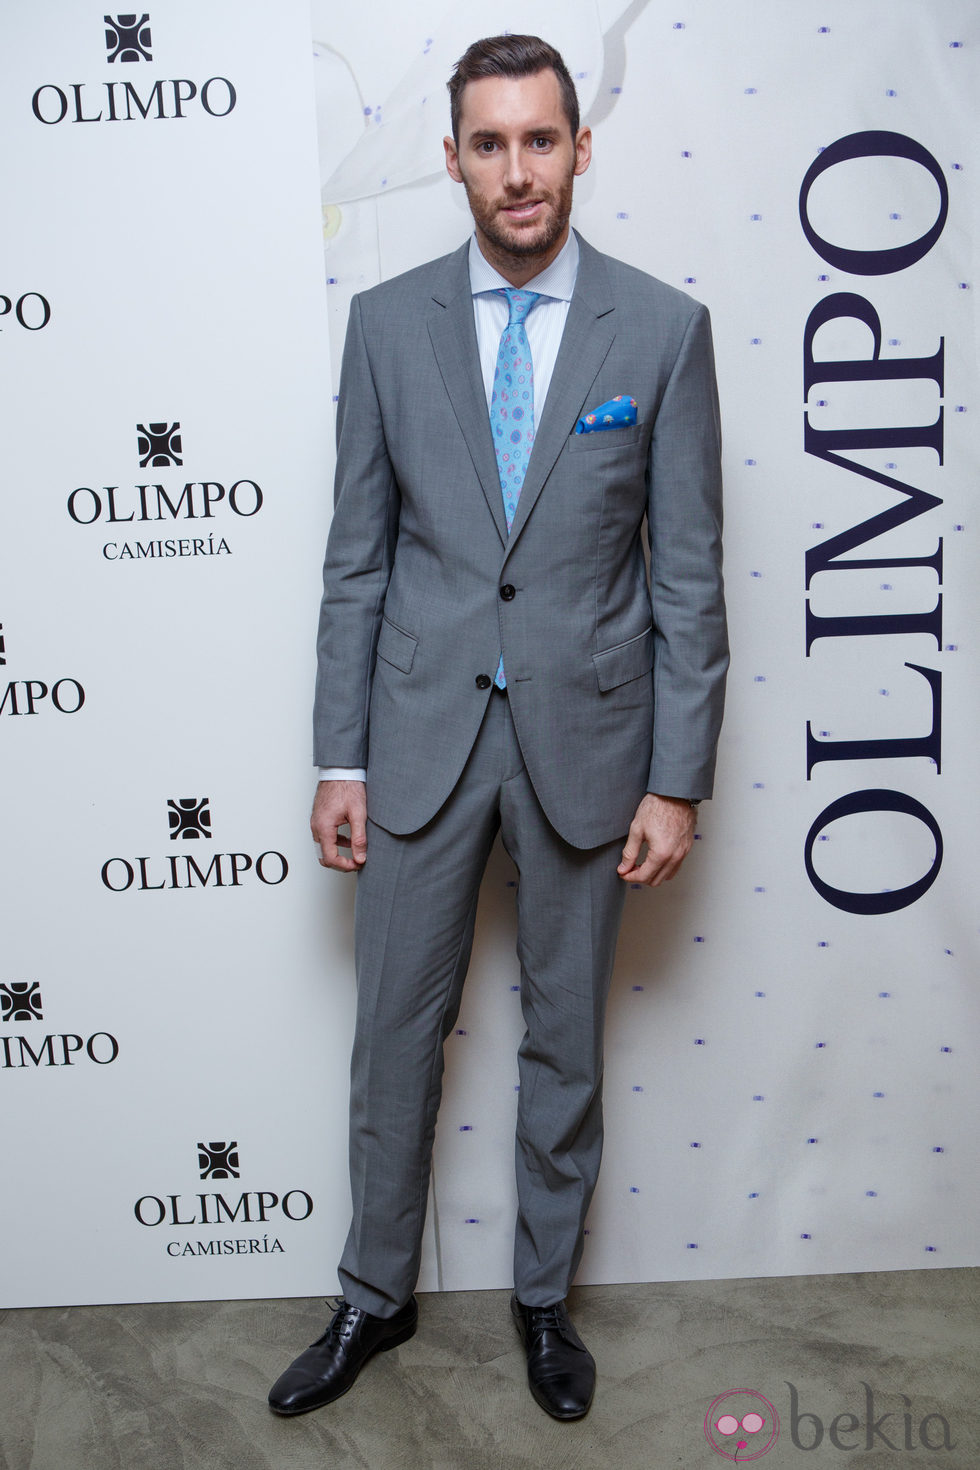 Rudy Fernández presta su imagen a la firma Olimpo para la colección primavera/verano 2015